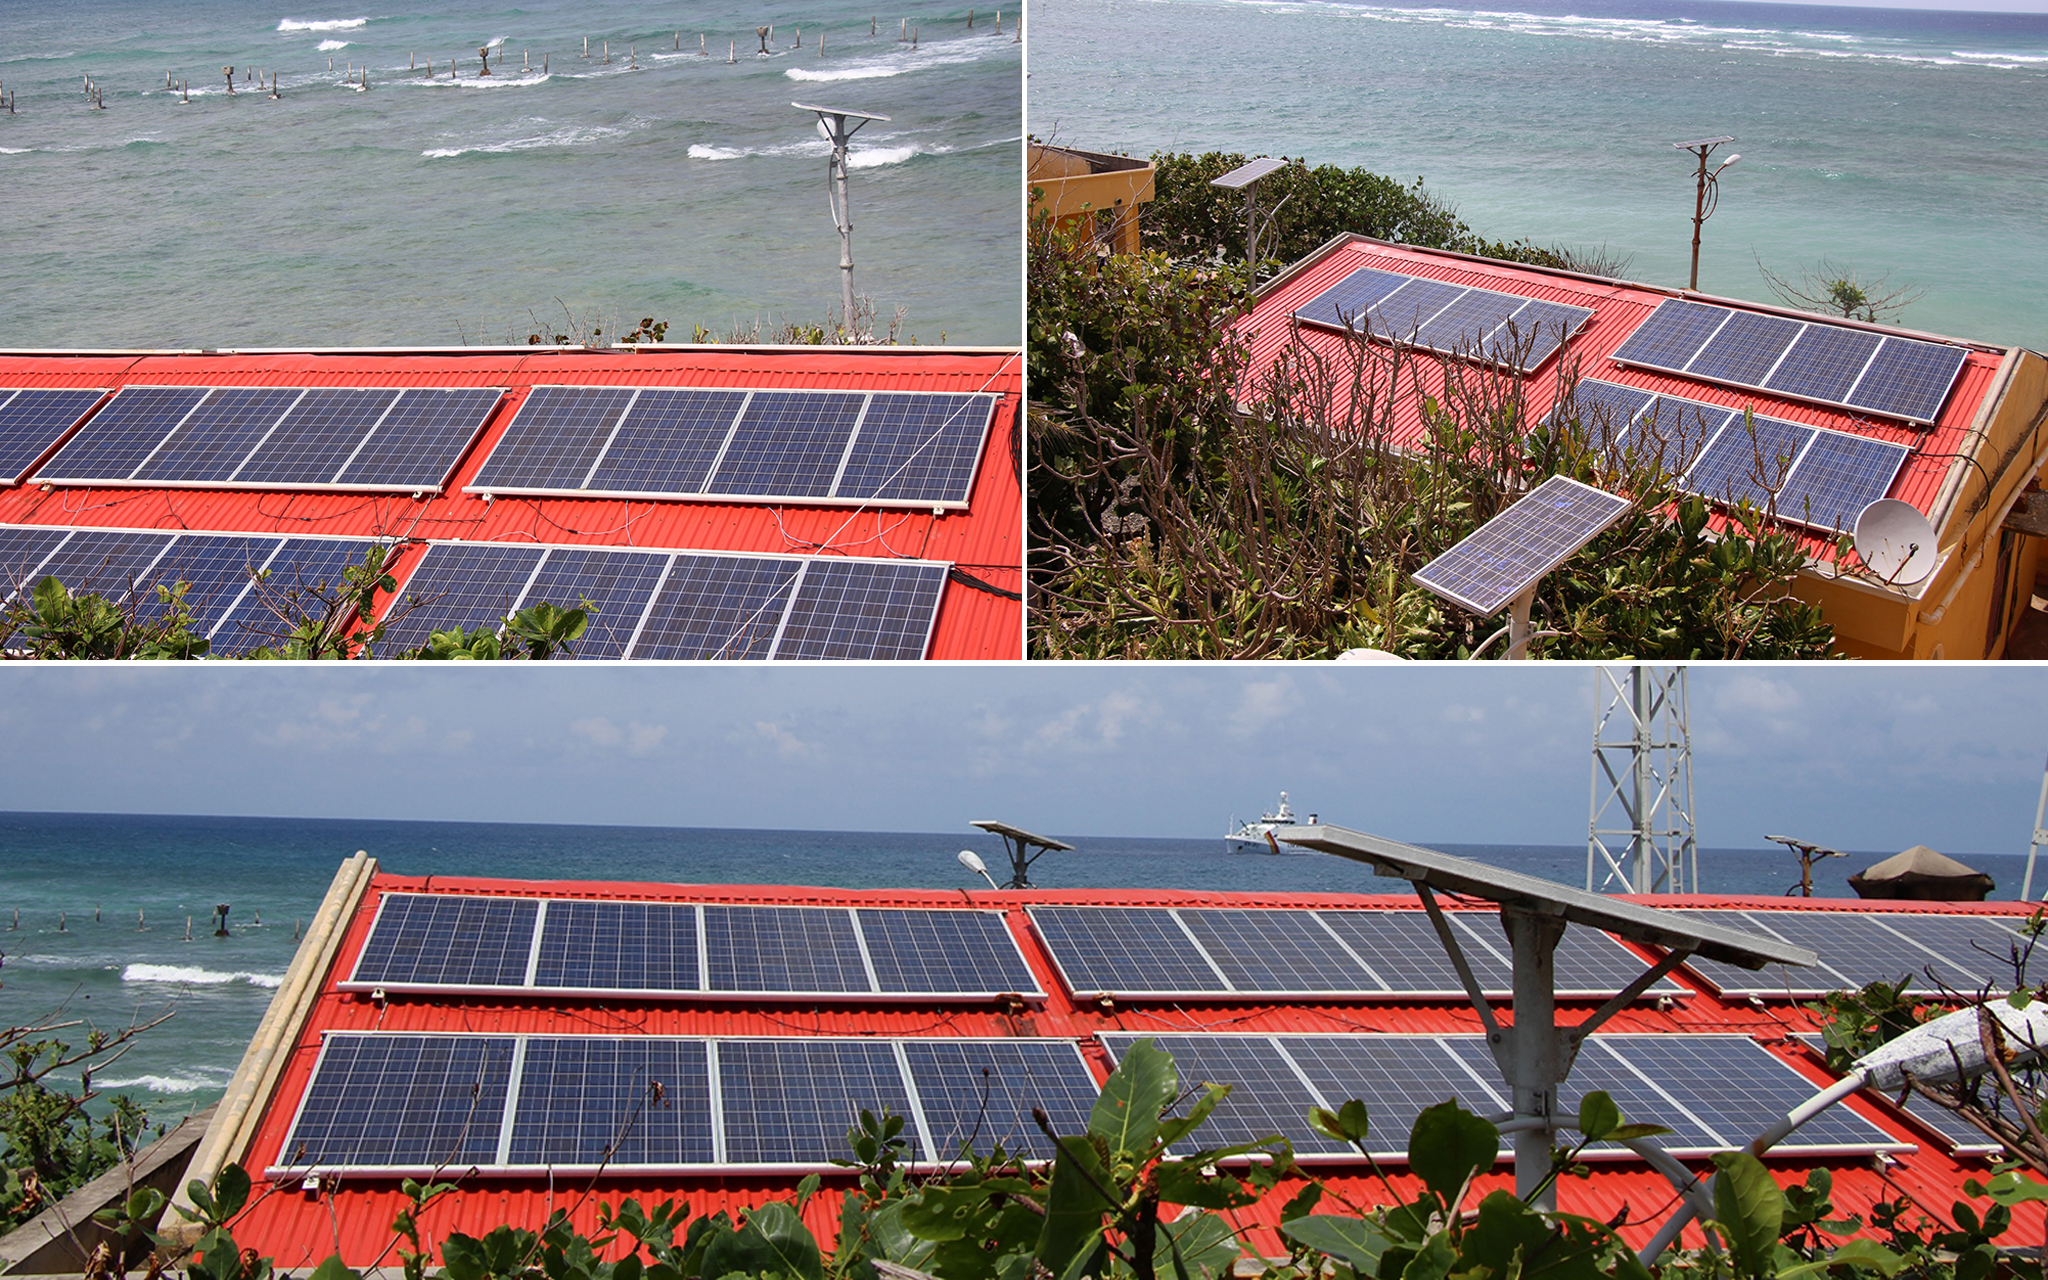 Tại đảo An Bang, đâu đâu trên những mái nhà ngói đỏ cũng được phủ thêm một màu xanh bóng nhoáng của tấm pin mặt trời để khai thác tối đa nguồn năng lượng sạch.